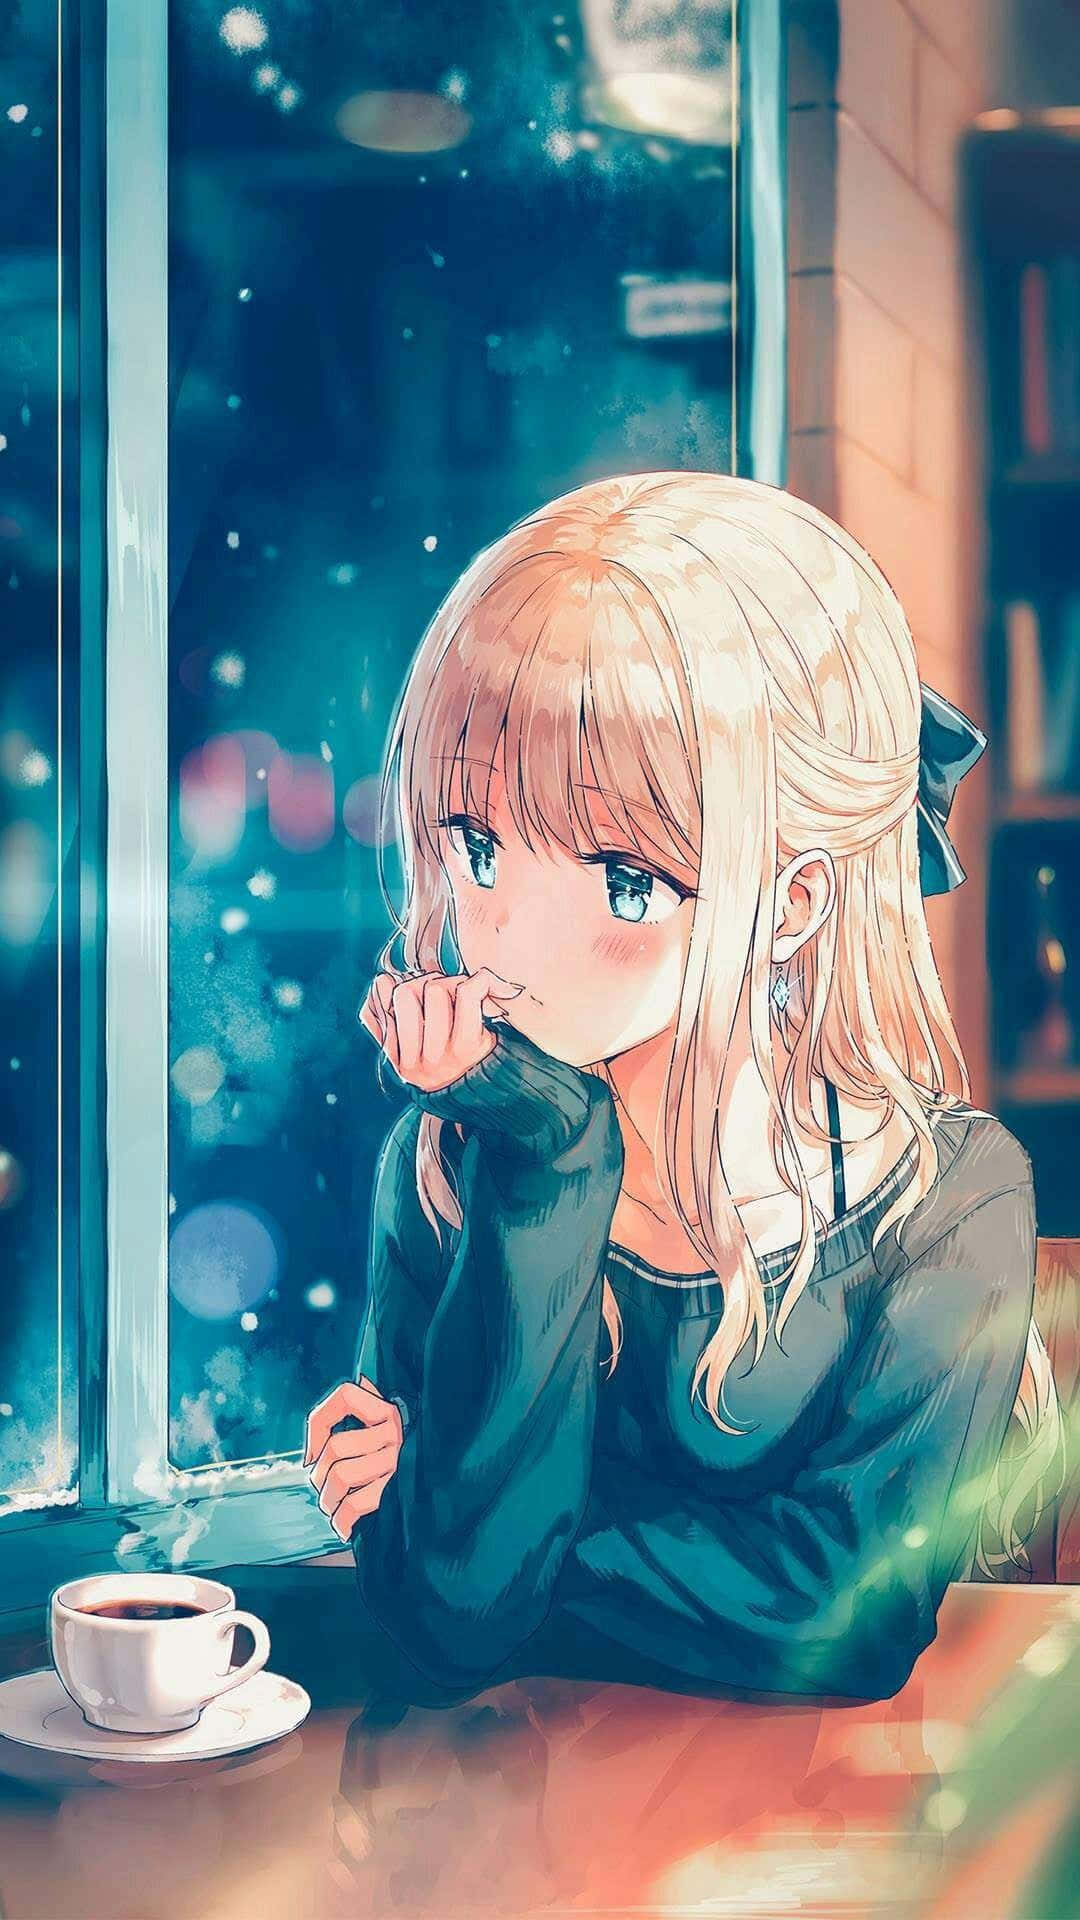 En ensom Anime-karakter, der tårer en tåre. Wallpaper